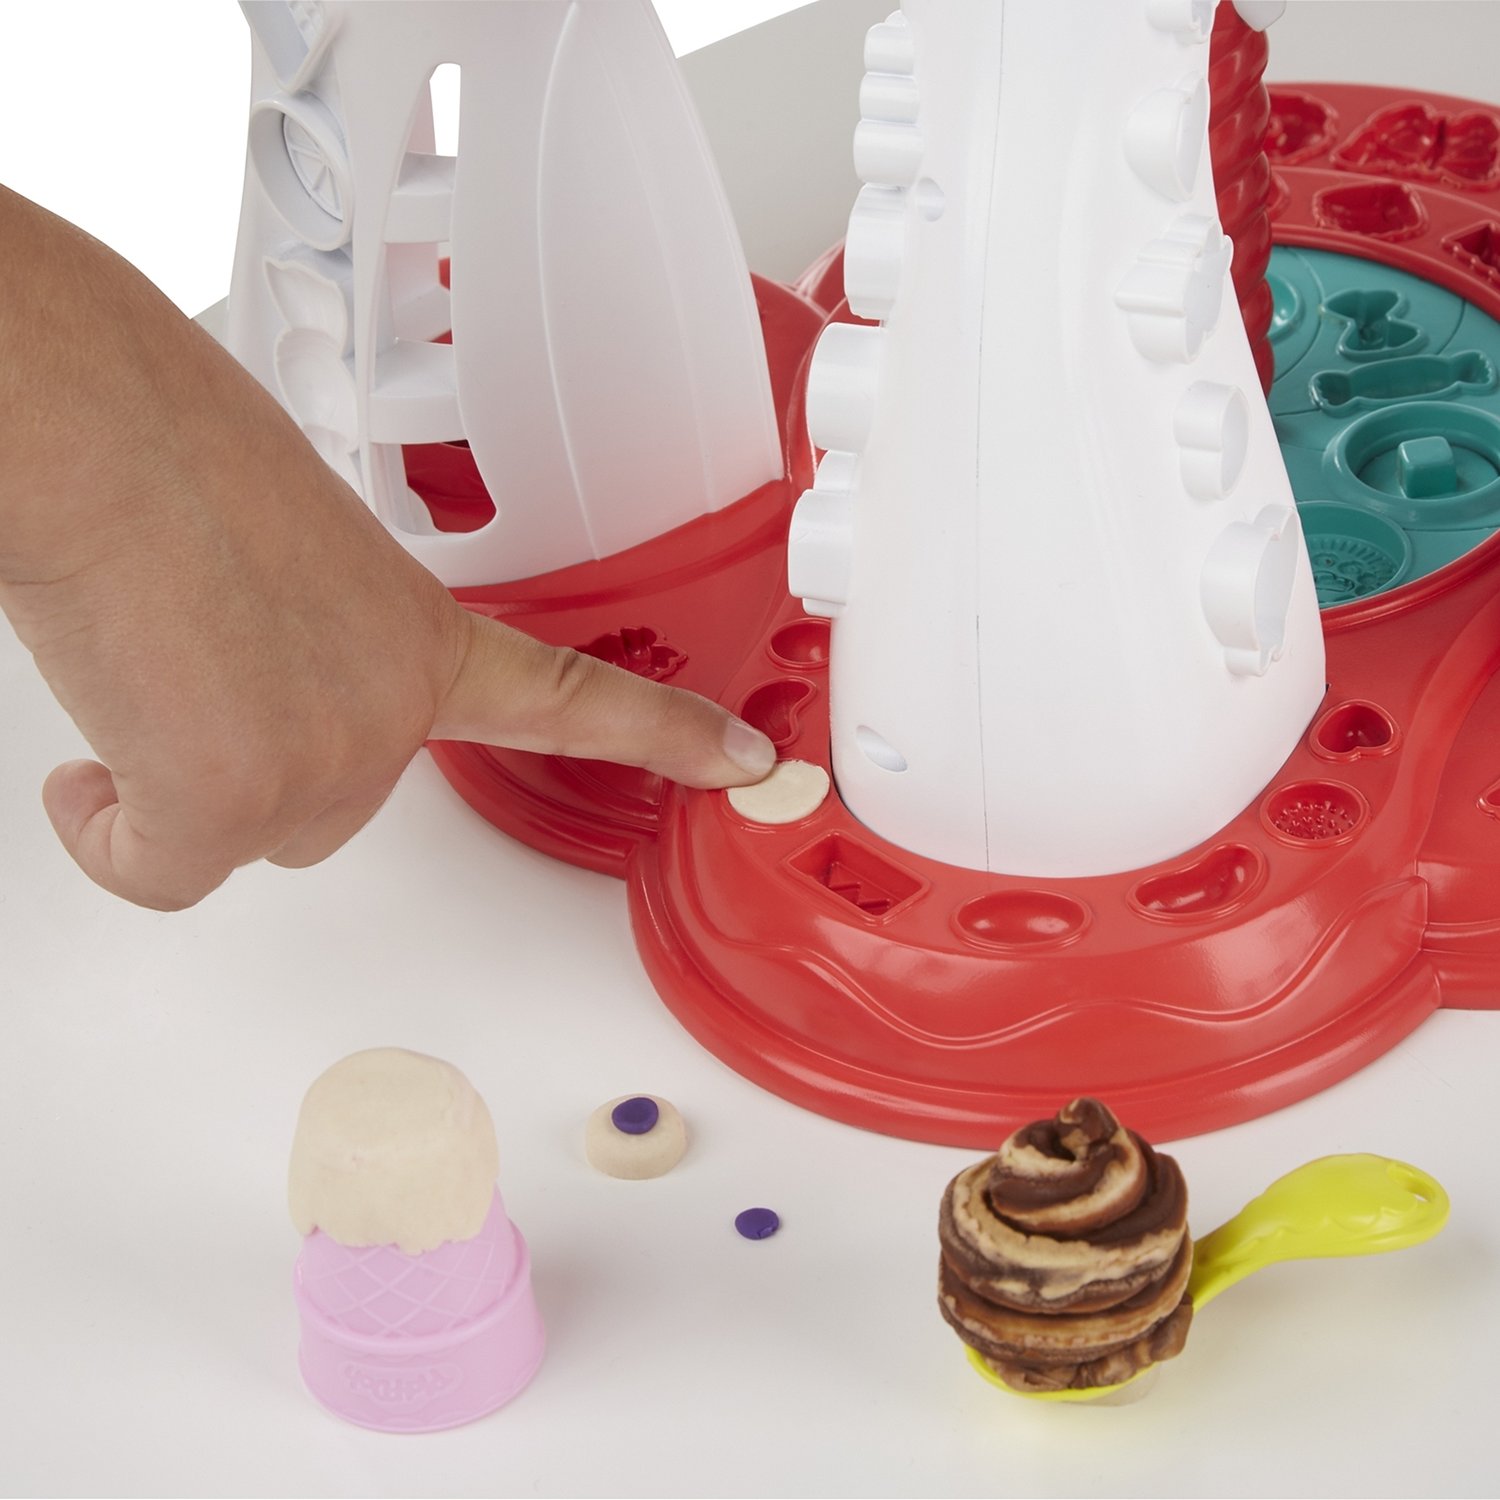 Набор игровой Play-Doh Мир мороженого E1935EU4/E1935EU6